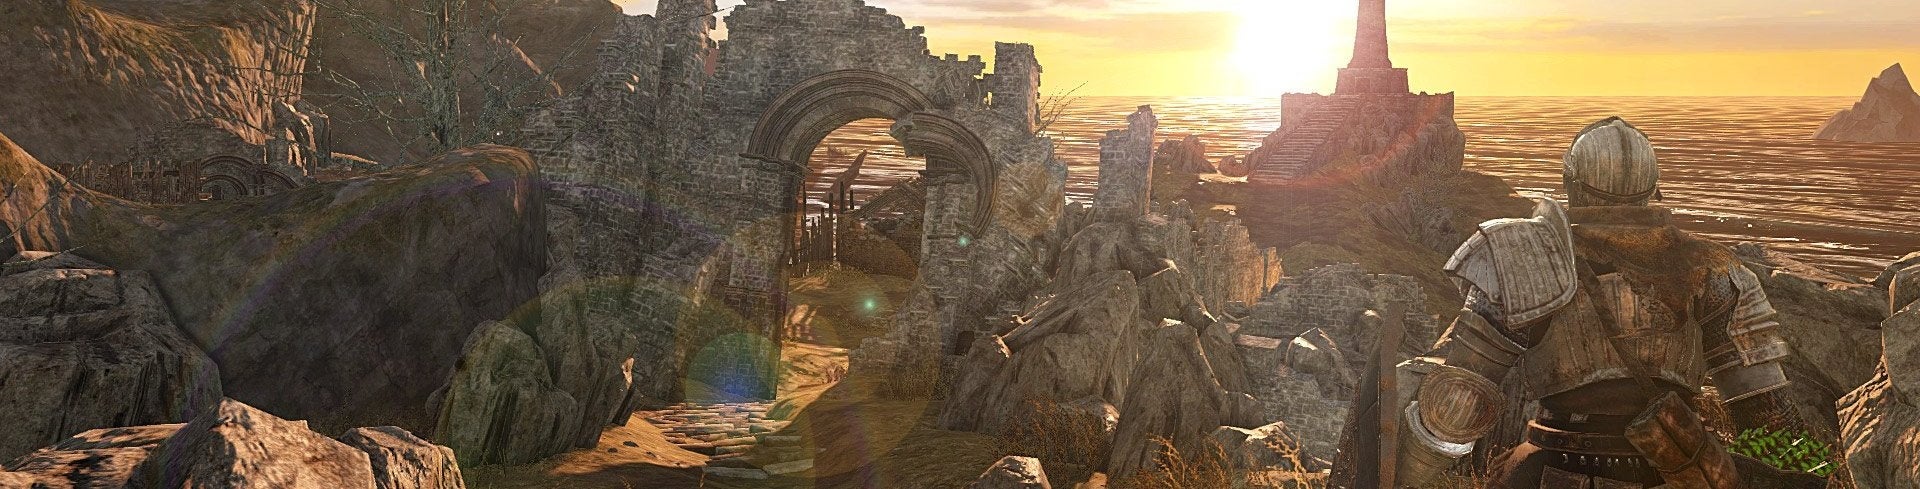 Afbeeldingen van Dark Souls II: Scholar of the First Sin onthuld voor PS4 en Xbox One